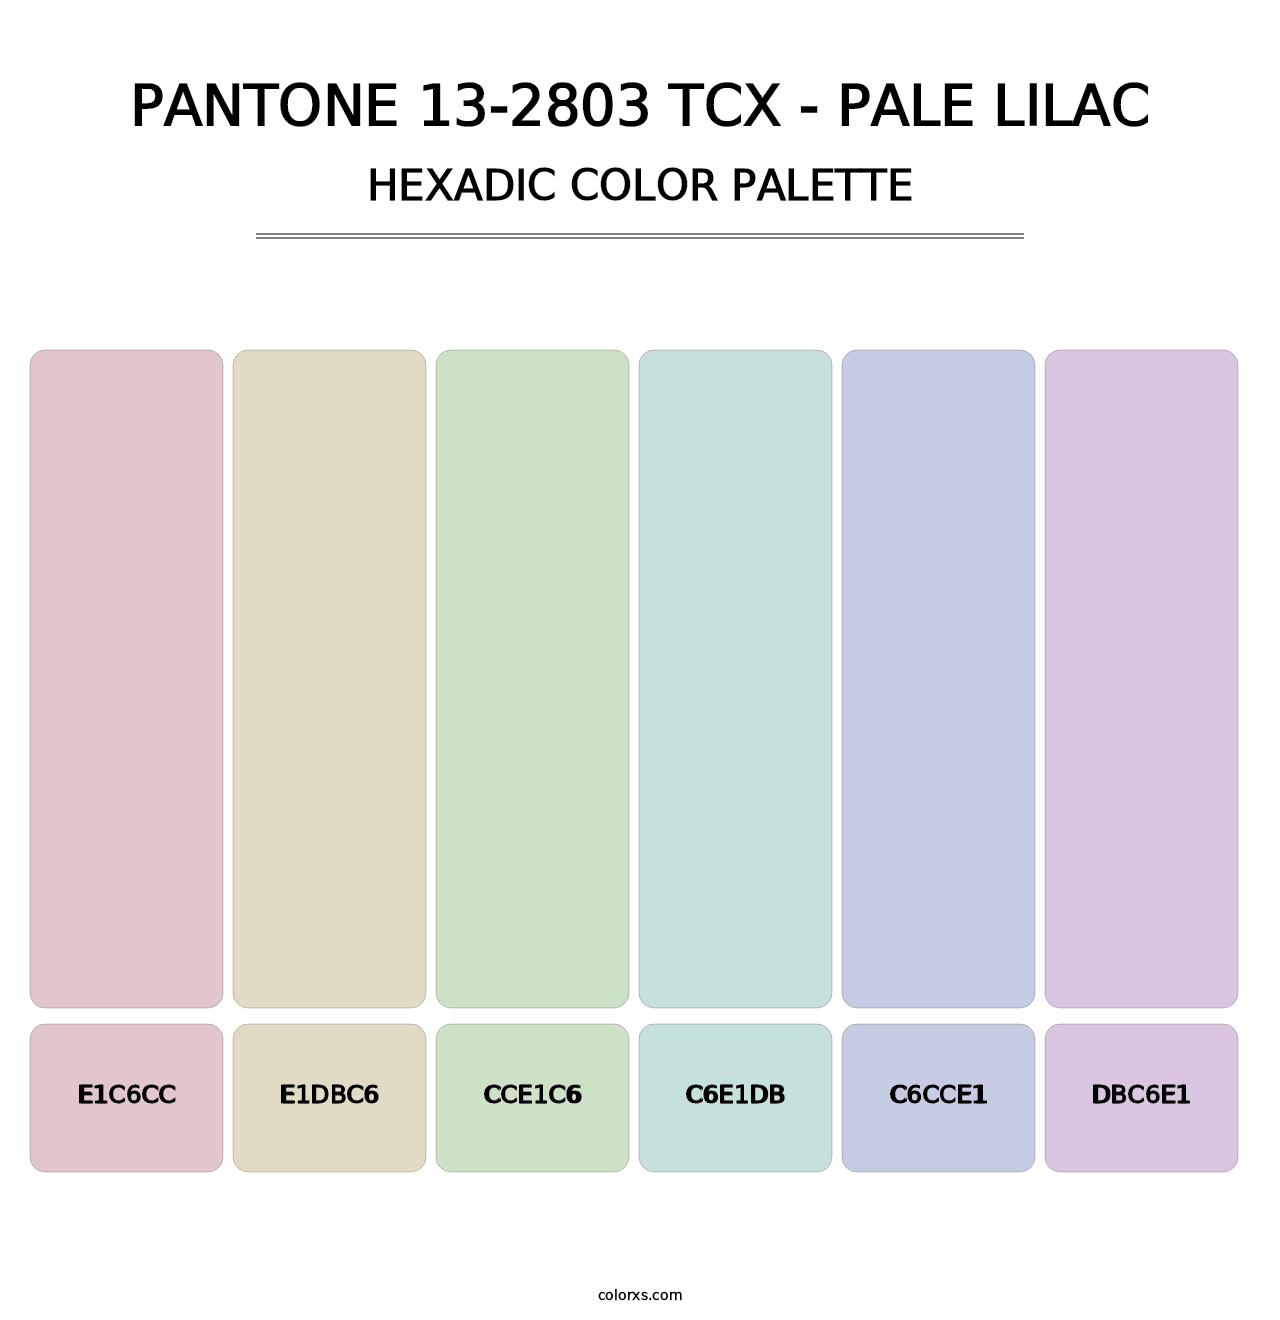 PANTONE 13-2803 TCX - Pale Lilac - Hexadic Color Palette